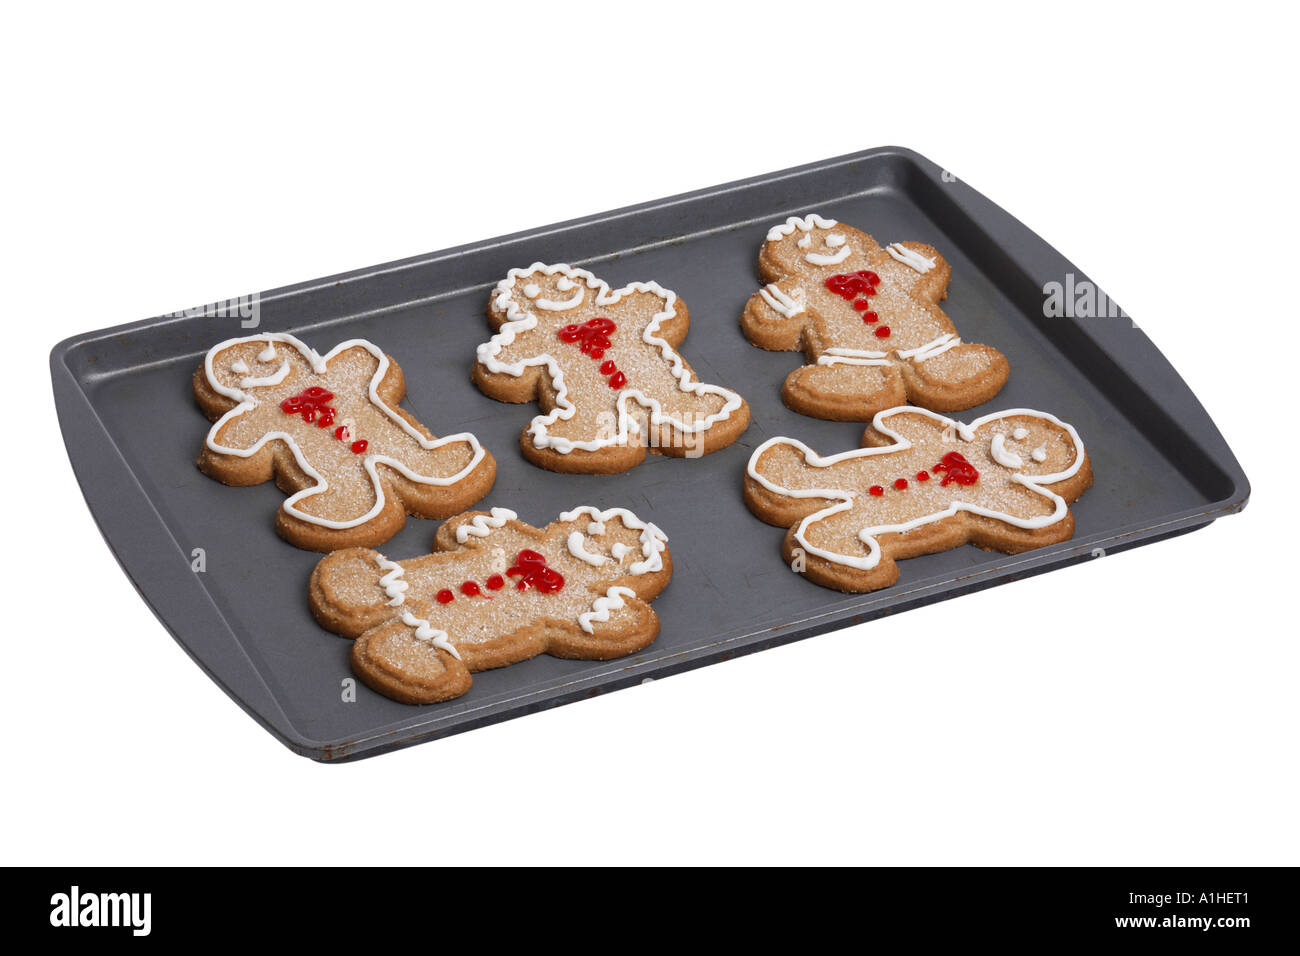 https://c8.alamy.com/comp/A1HET1/gingerbread-cookies-on-baking-pan-A1HET1.jpg